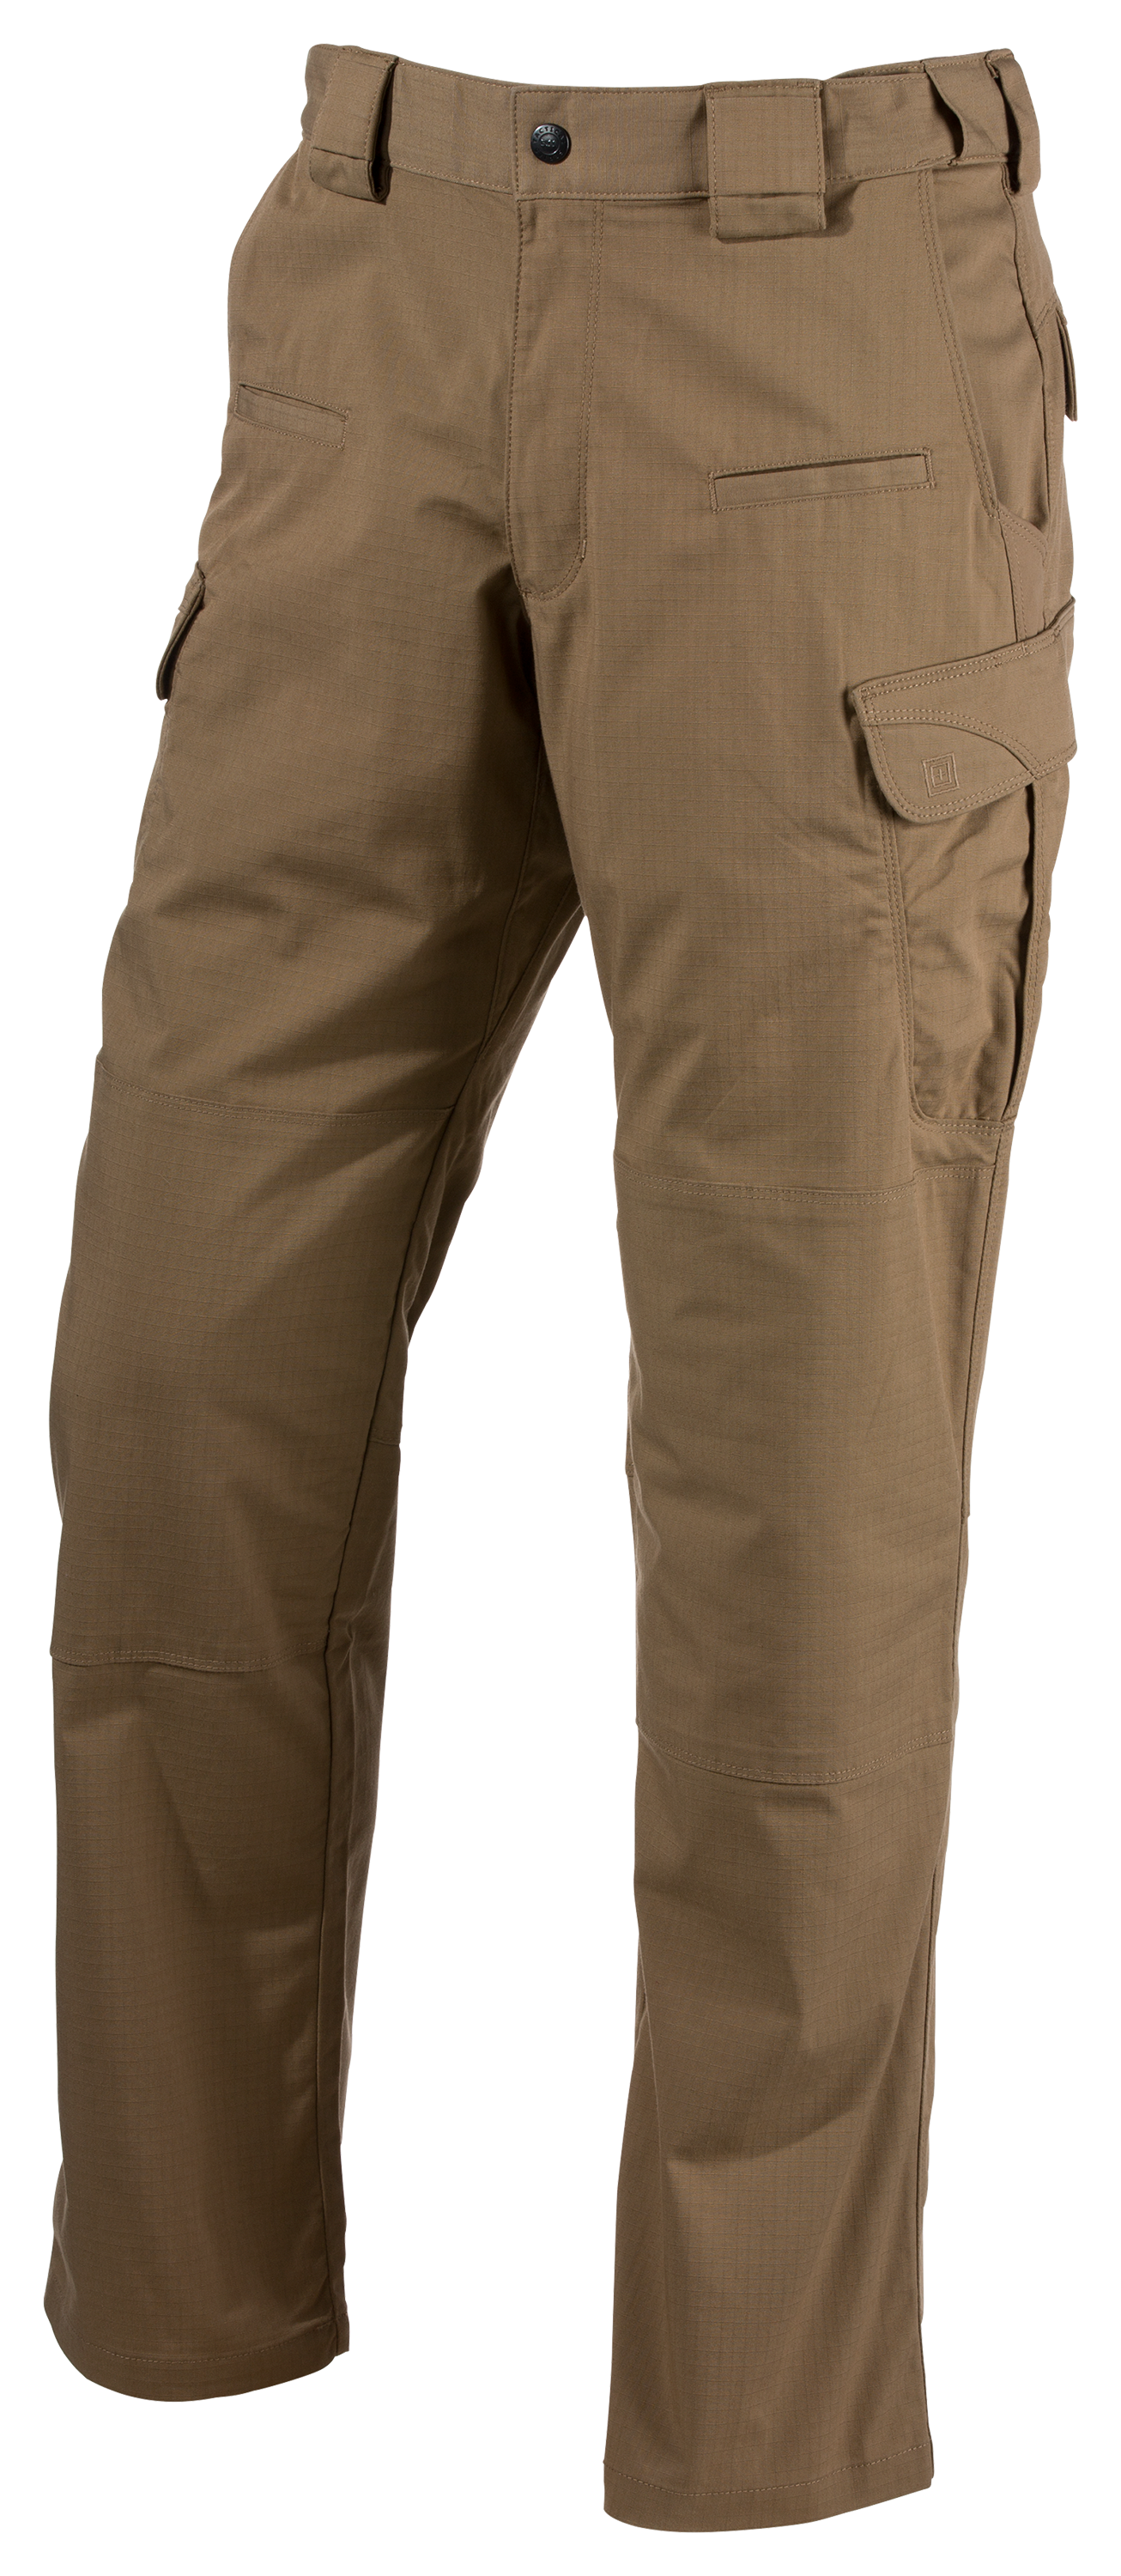 5.11 Tactical Men's Stryke® Pants w/Flex-Tac®